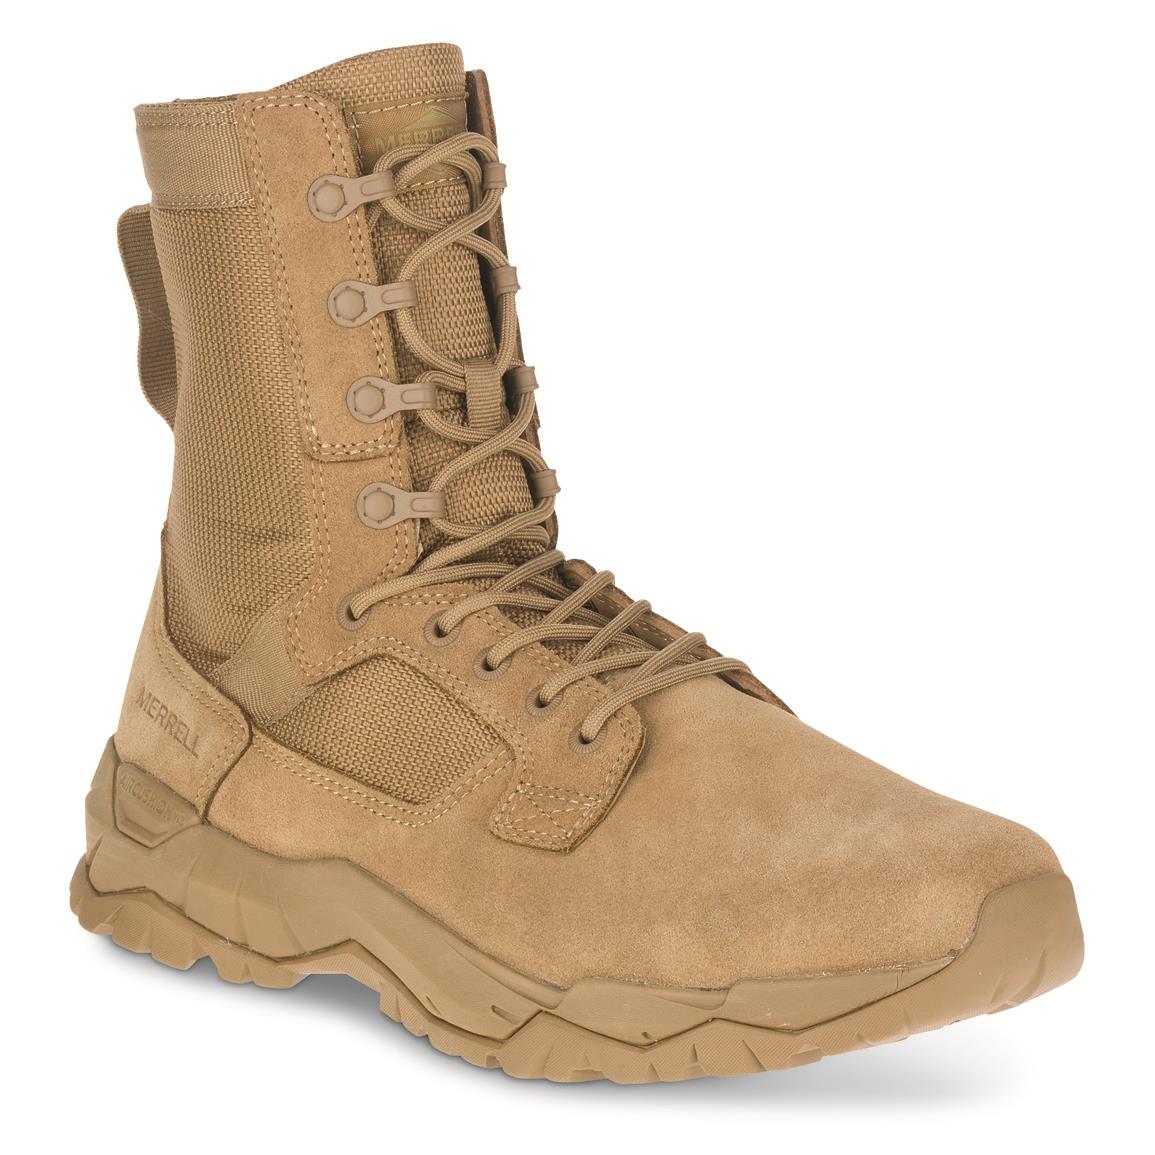 Merrell Men's MQC 2 Tactical Boots, Dark Coyote